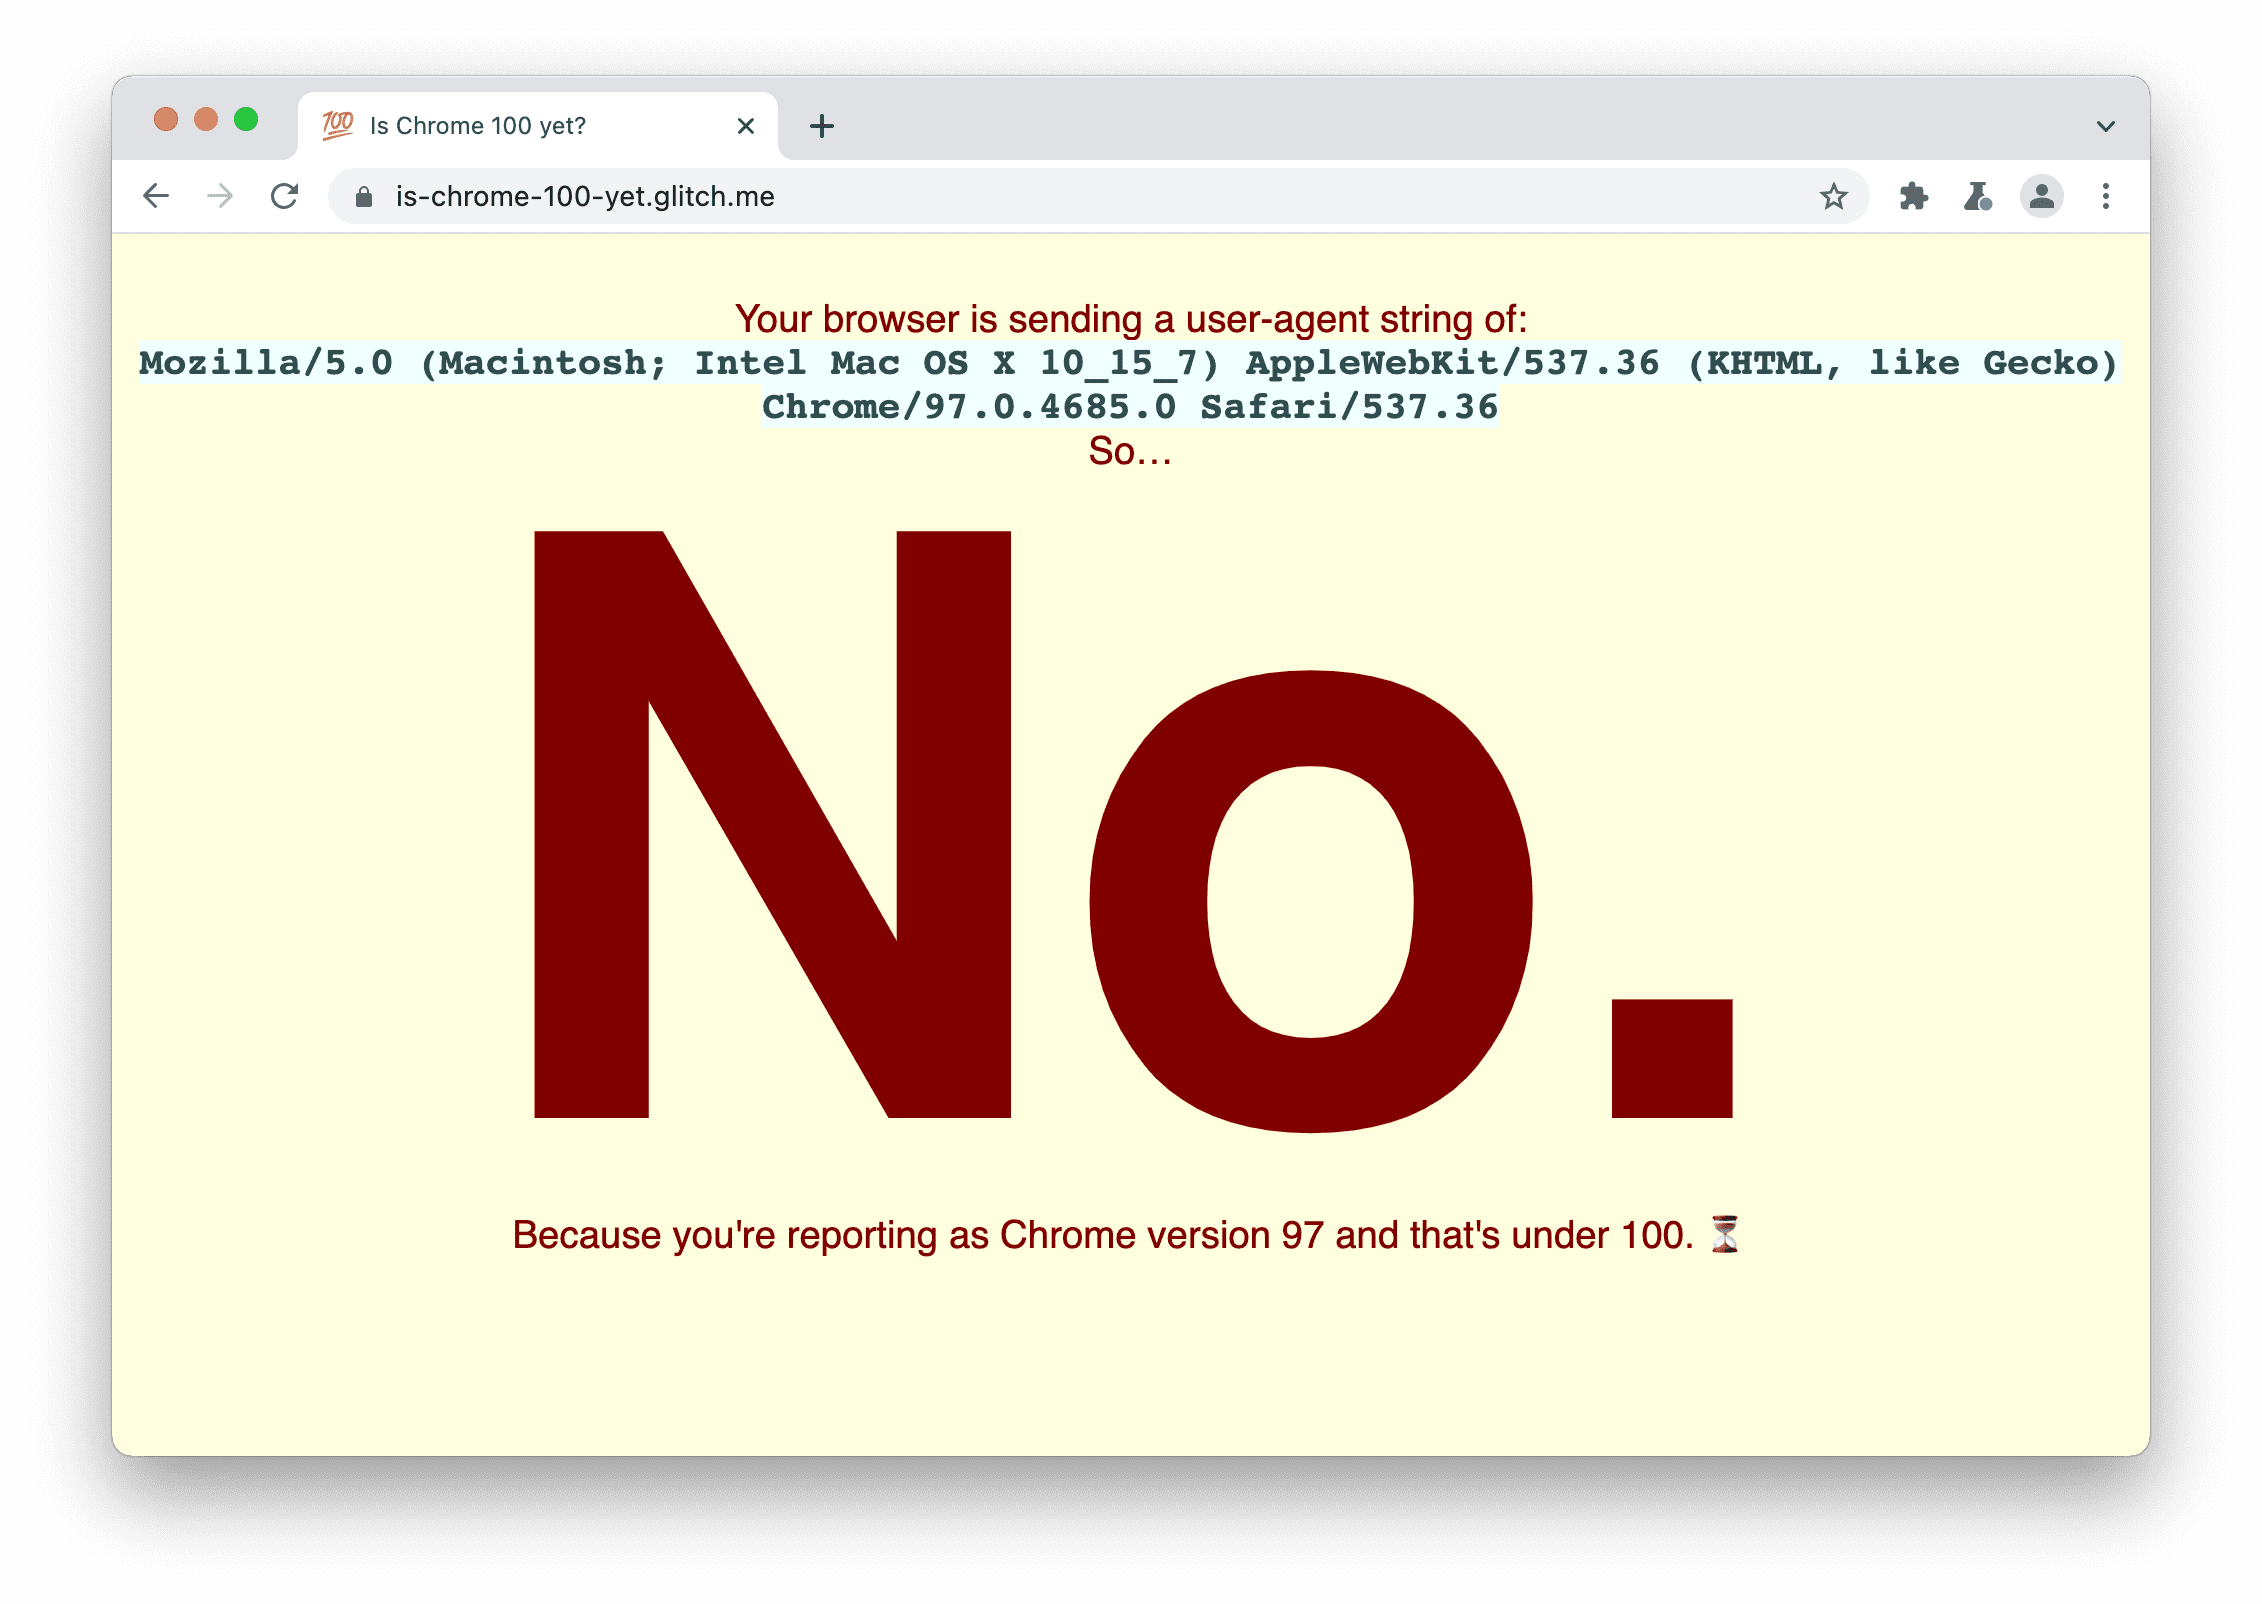 Um site que verifica se o navegador está enviando
a string user agent 100 A mensagem exibida é: Não, porque você está informando como Chrome versão 97 e inferior à versão 100.